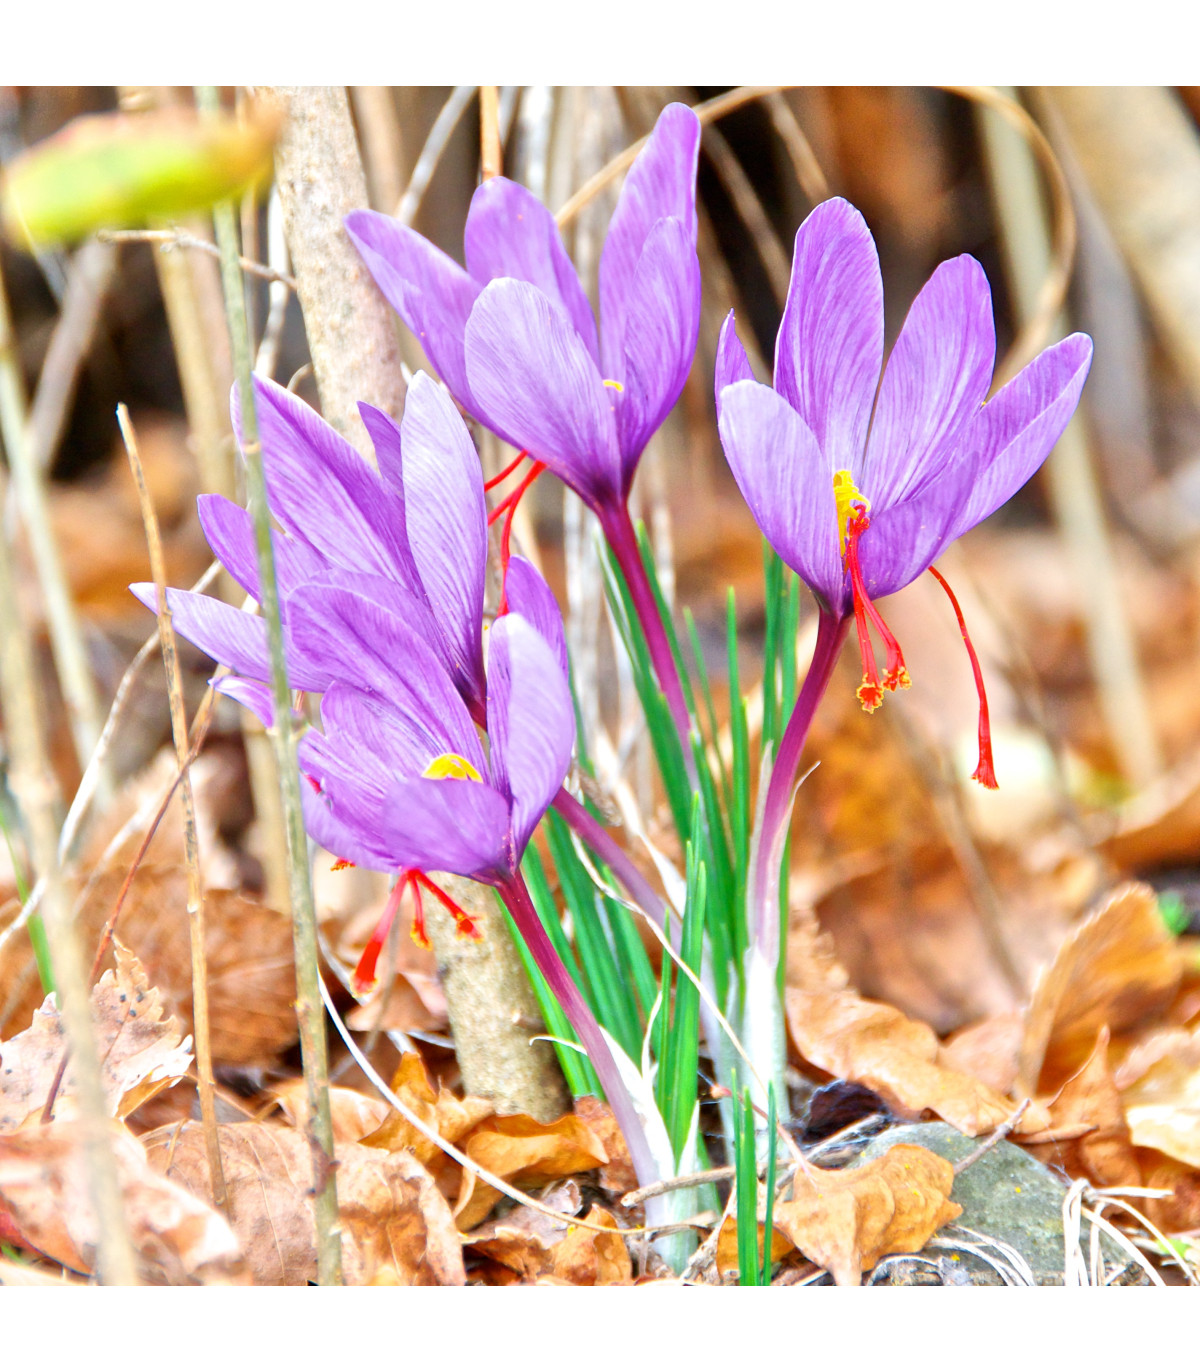 Šafrán siaty - Crocus sativus - hľuzy krókusu - 3 ks